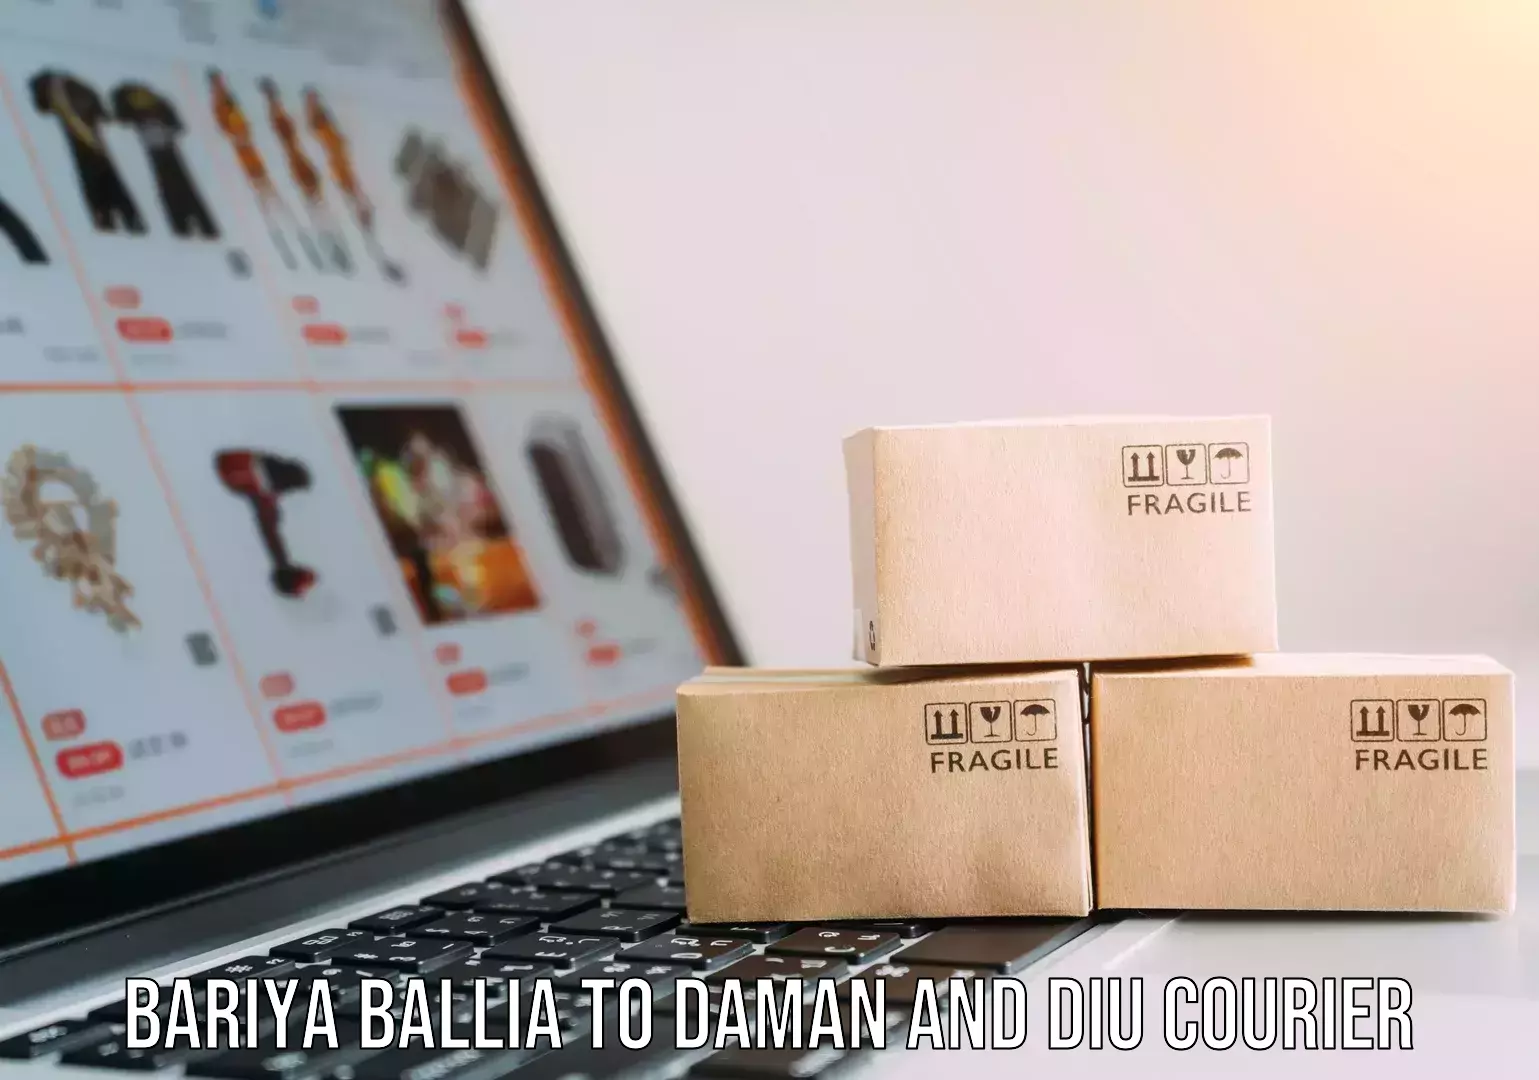 Reliable delivery network Bariya Ballia to Diu